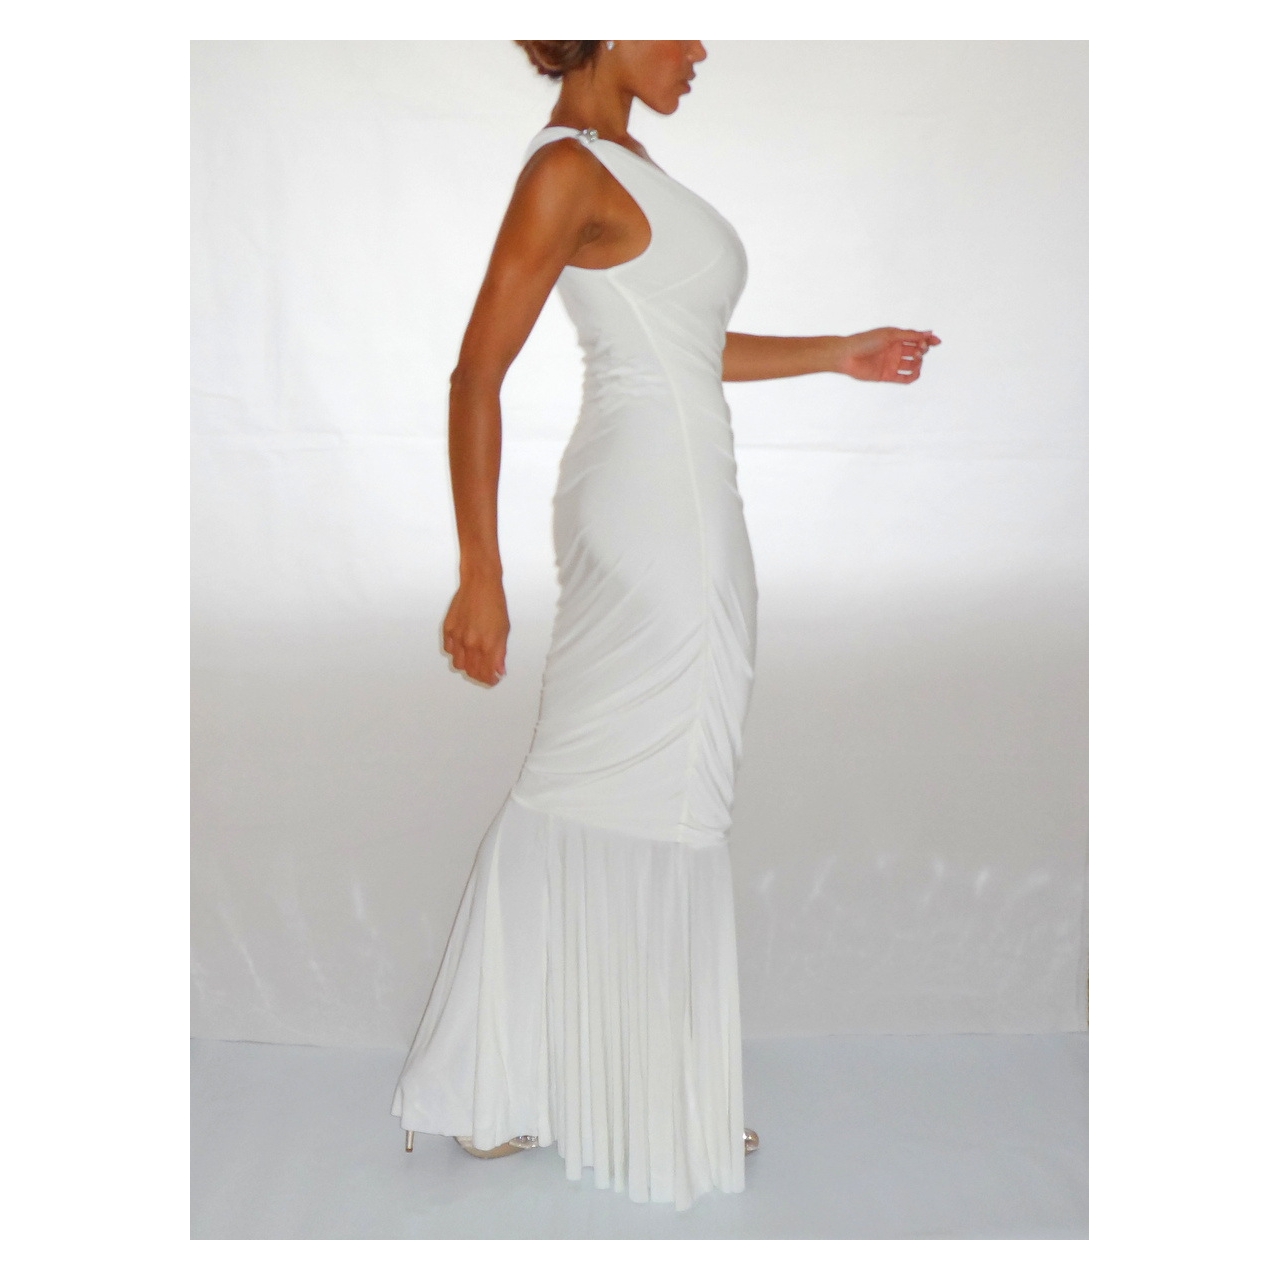 Bodycon White Maxi Dress - 20 Great Ideas